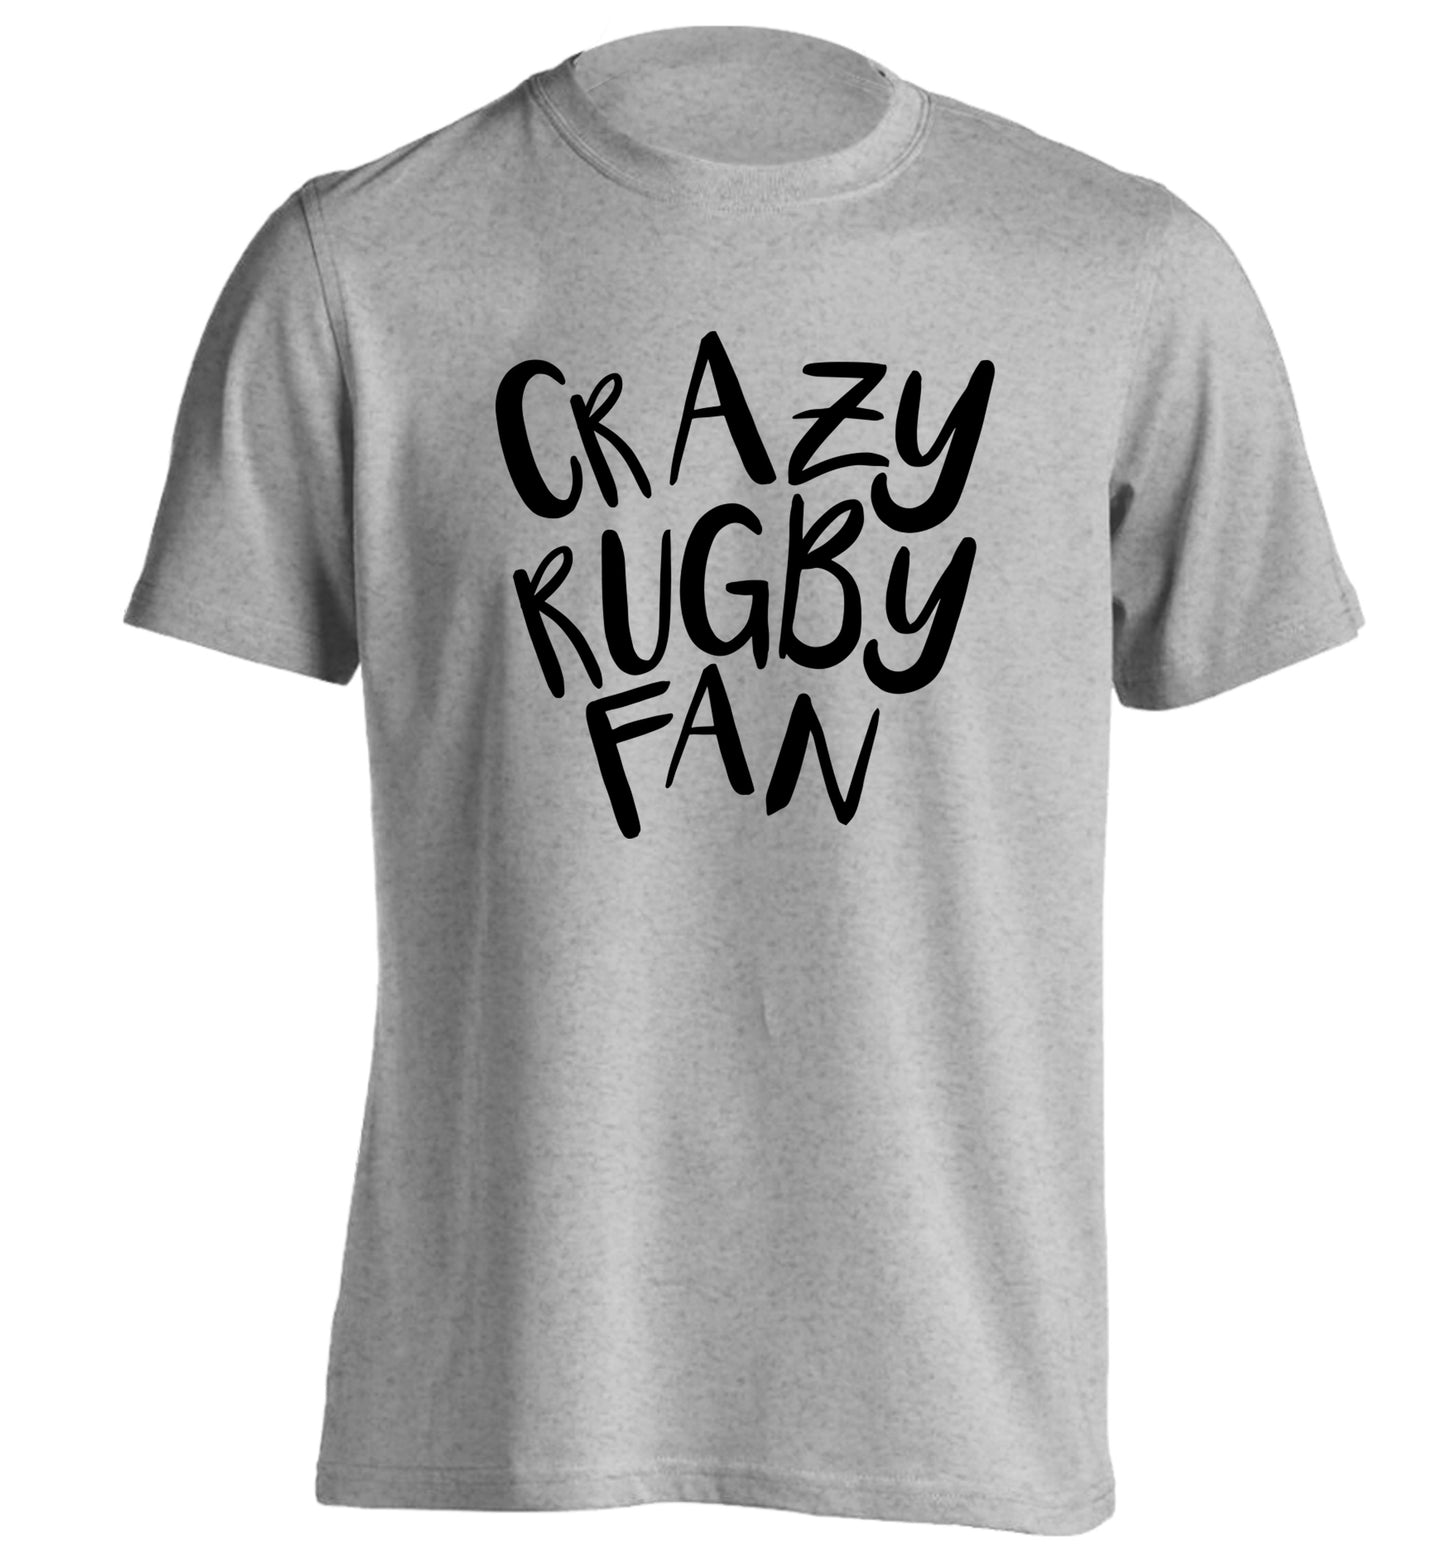 Crazy rugby fan adults unisex grey Tshirt 2XL